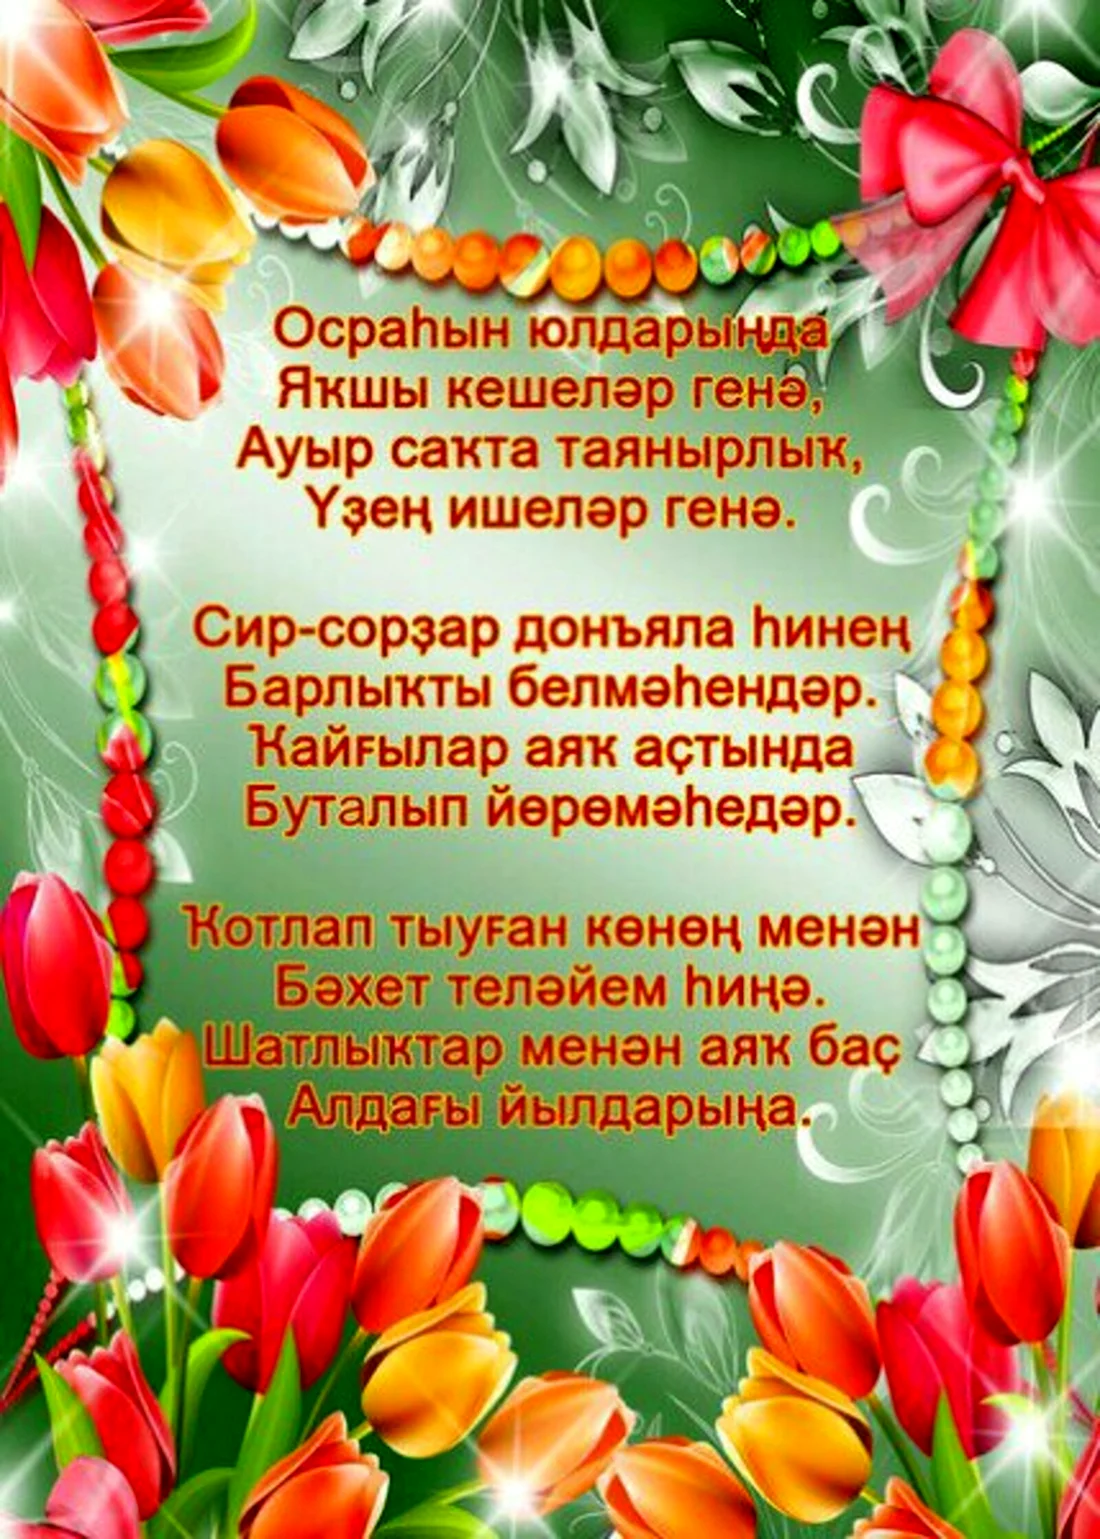 Поздравления с днём рождения на башкирском. Открытка с юбилеем. Поздравление с юбилеем